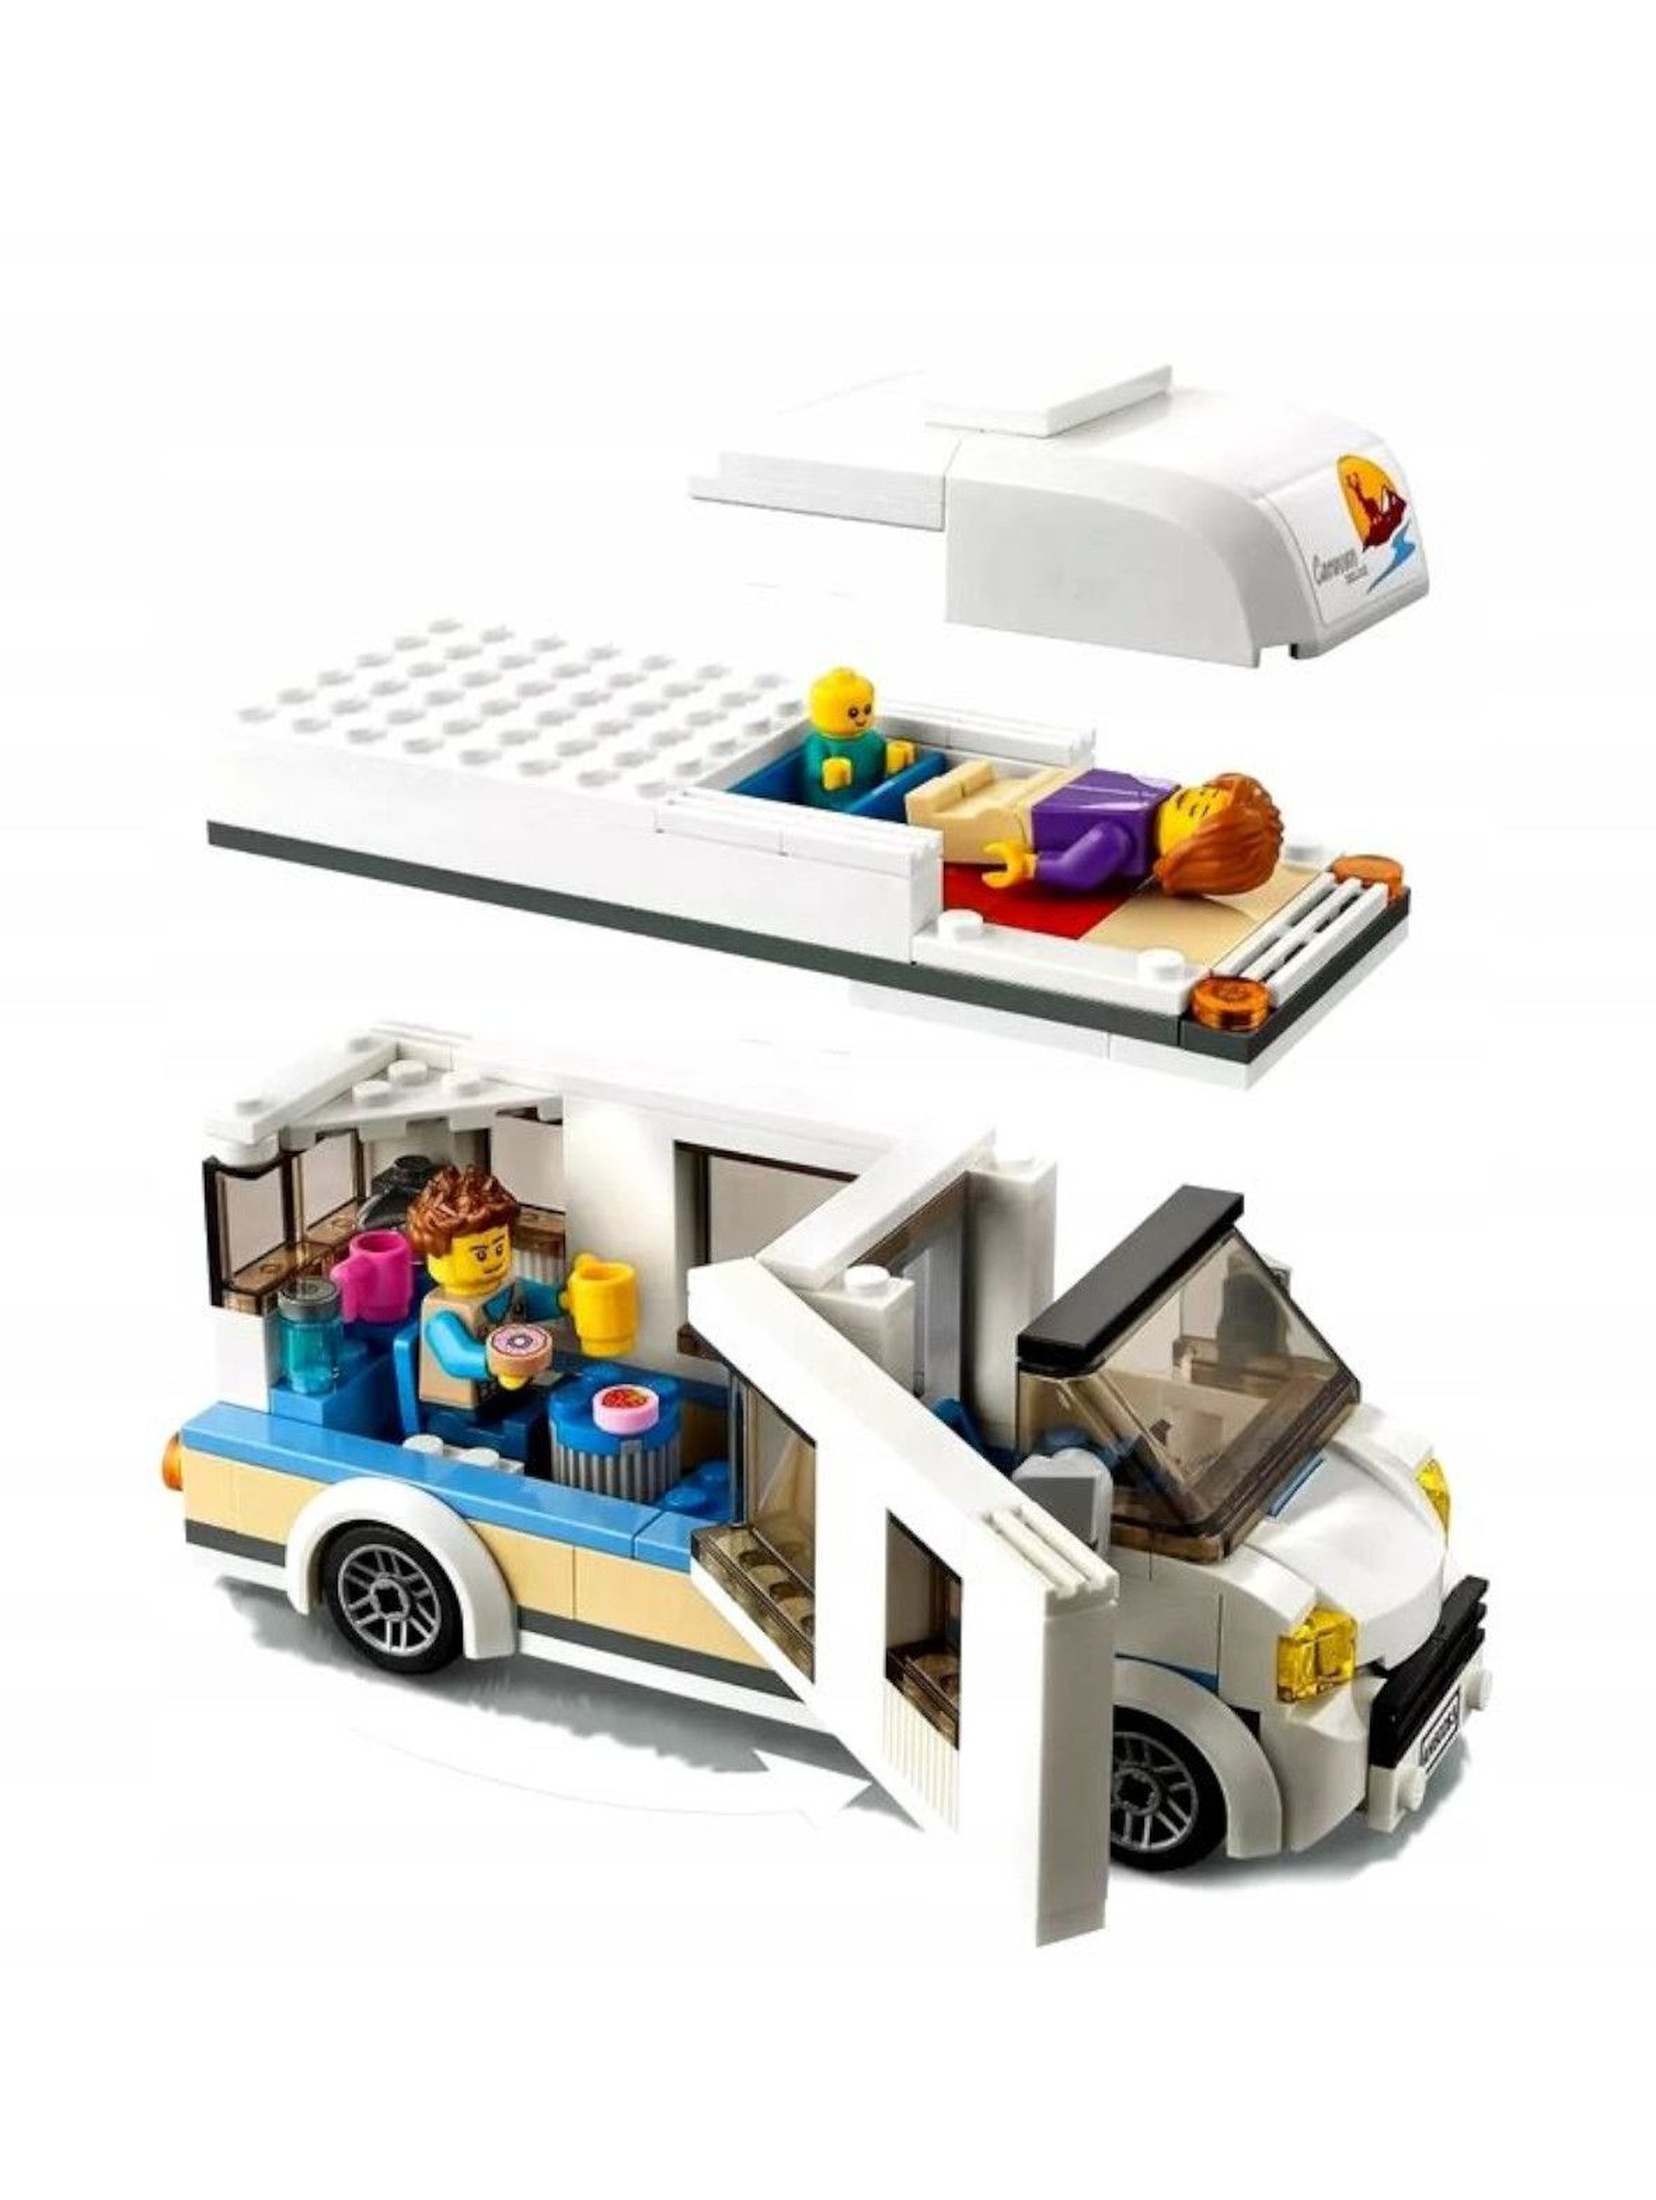 Lego City Wakacyjny kamper 60283 - 190 elementów wiek 5+